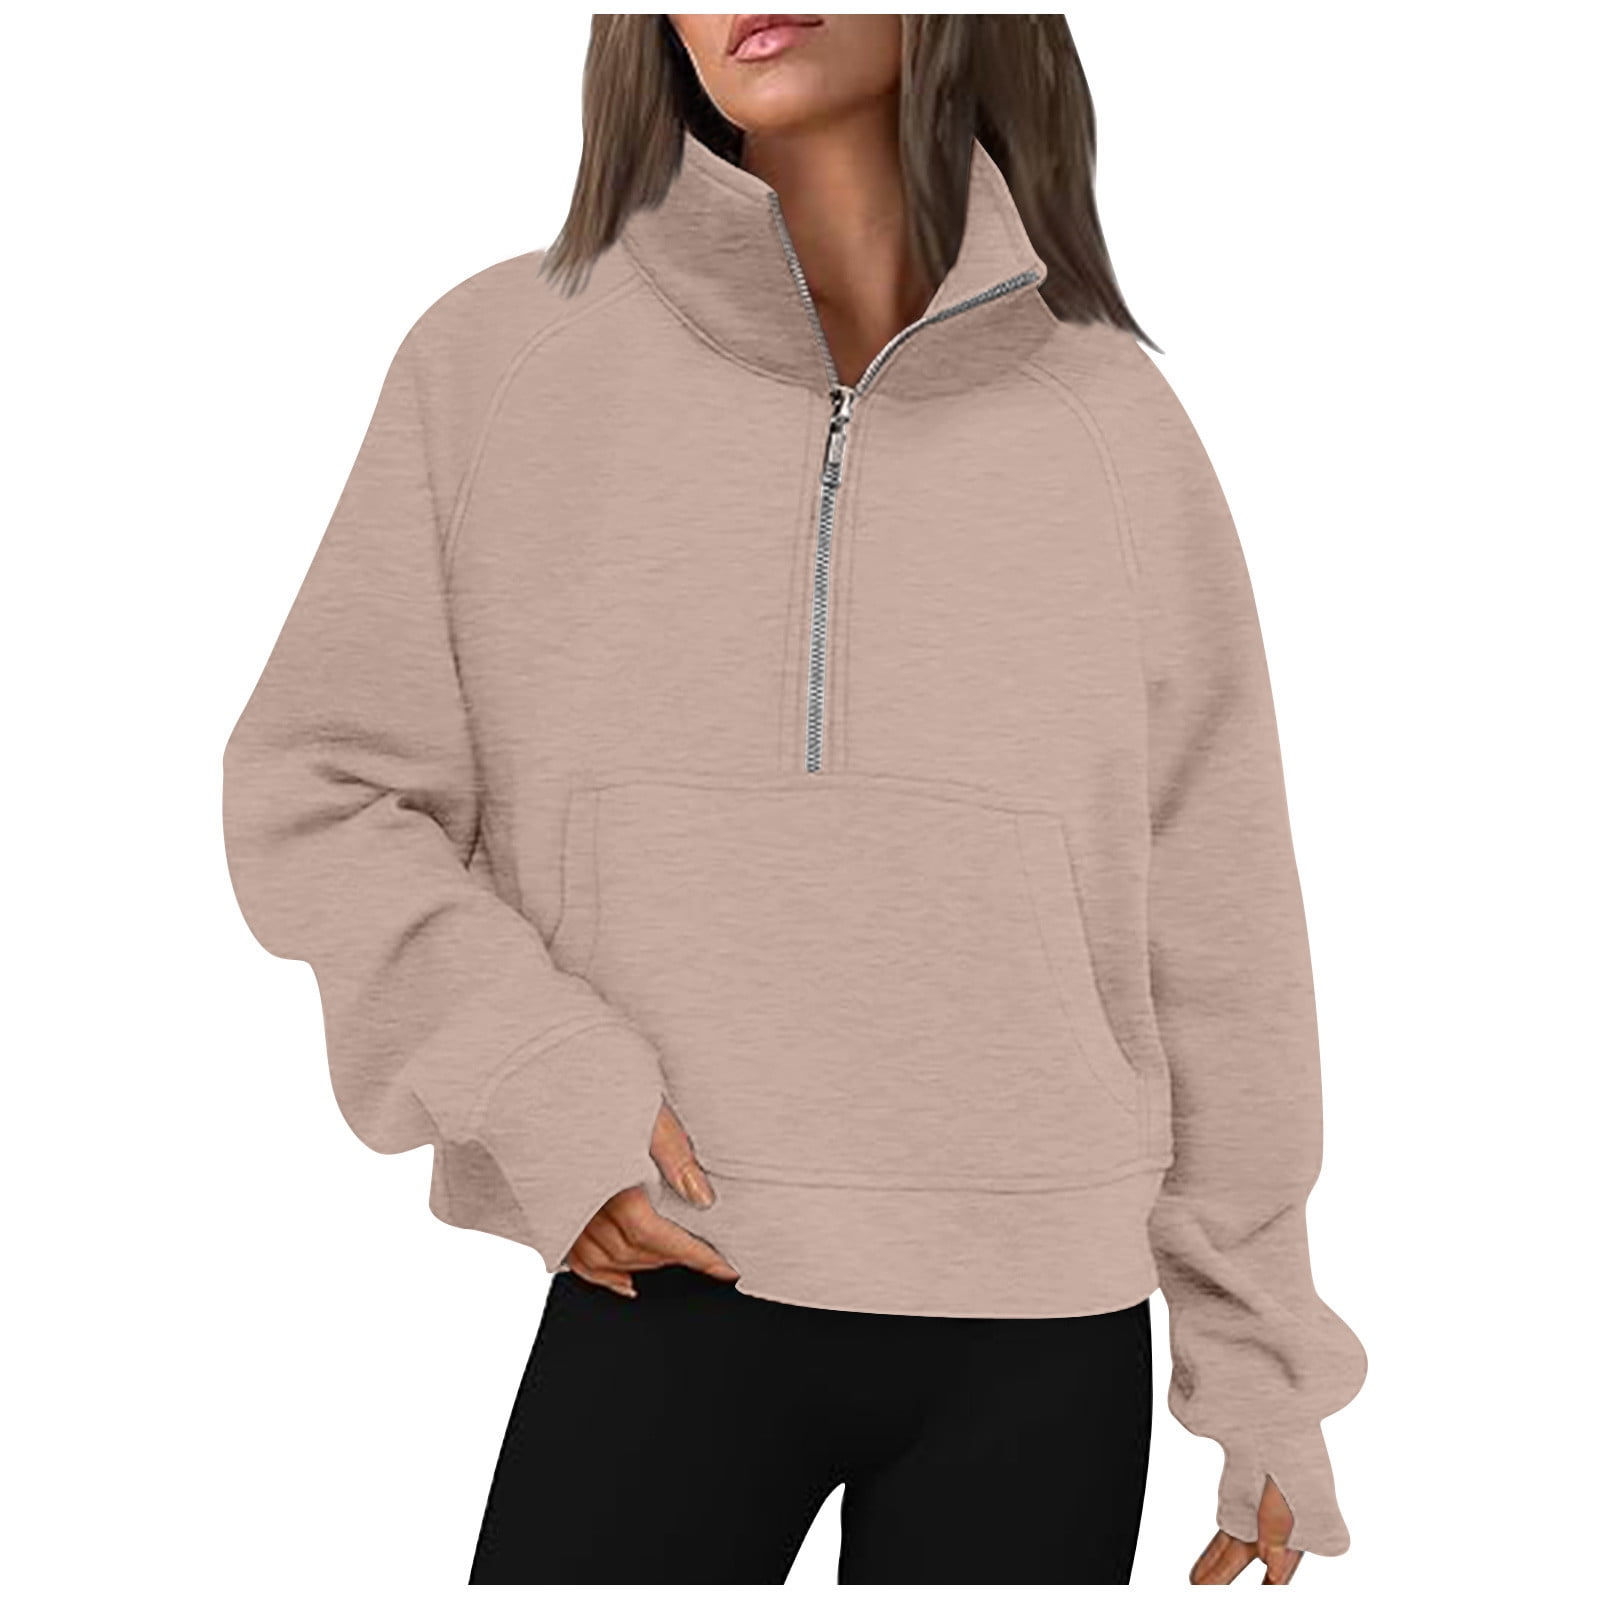 Yyeselk Half Zip Sweatshirts for Women Casual Fleece Long Sleeve